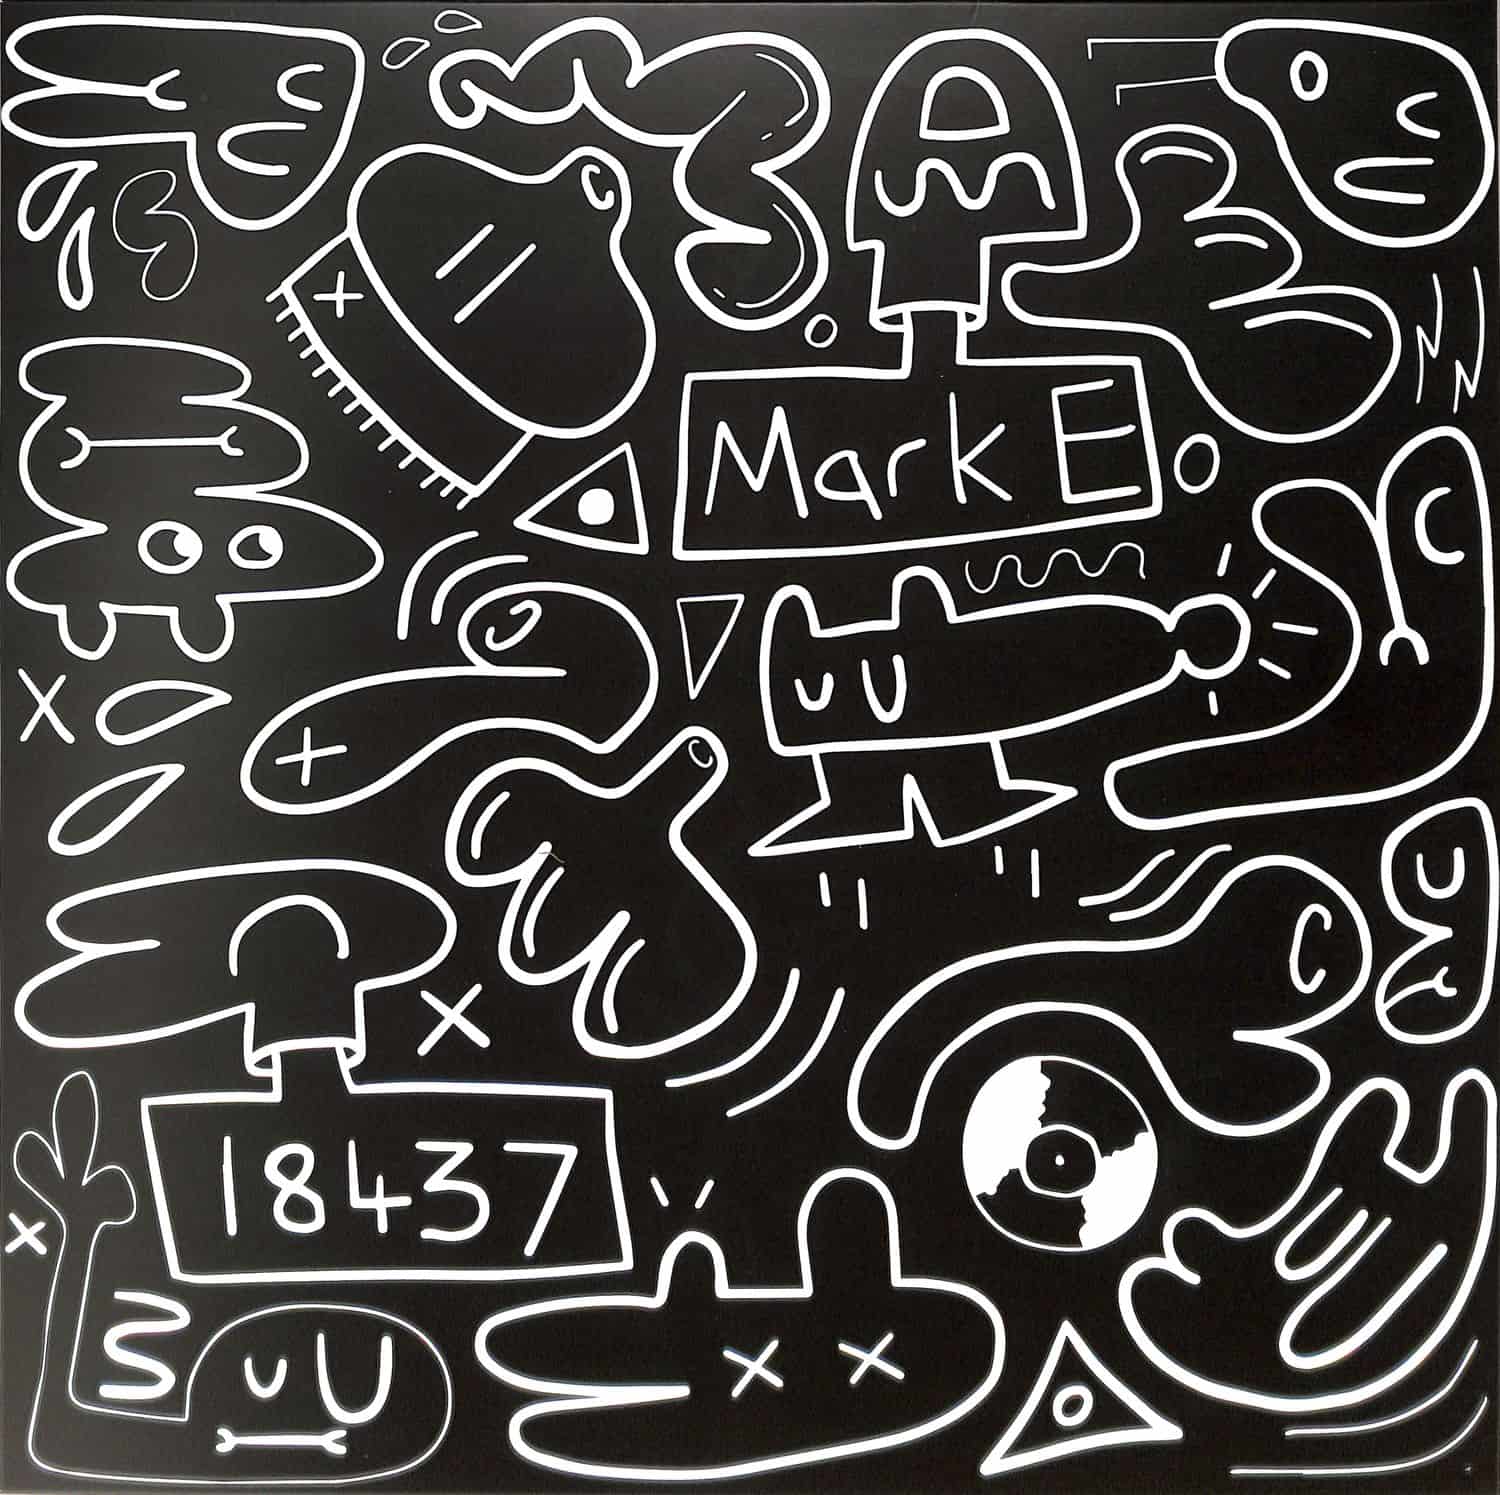 Mark E - IN THE CITY EP